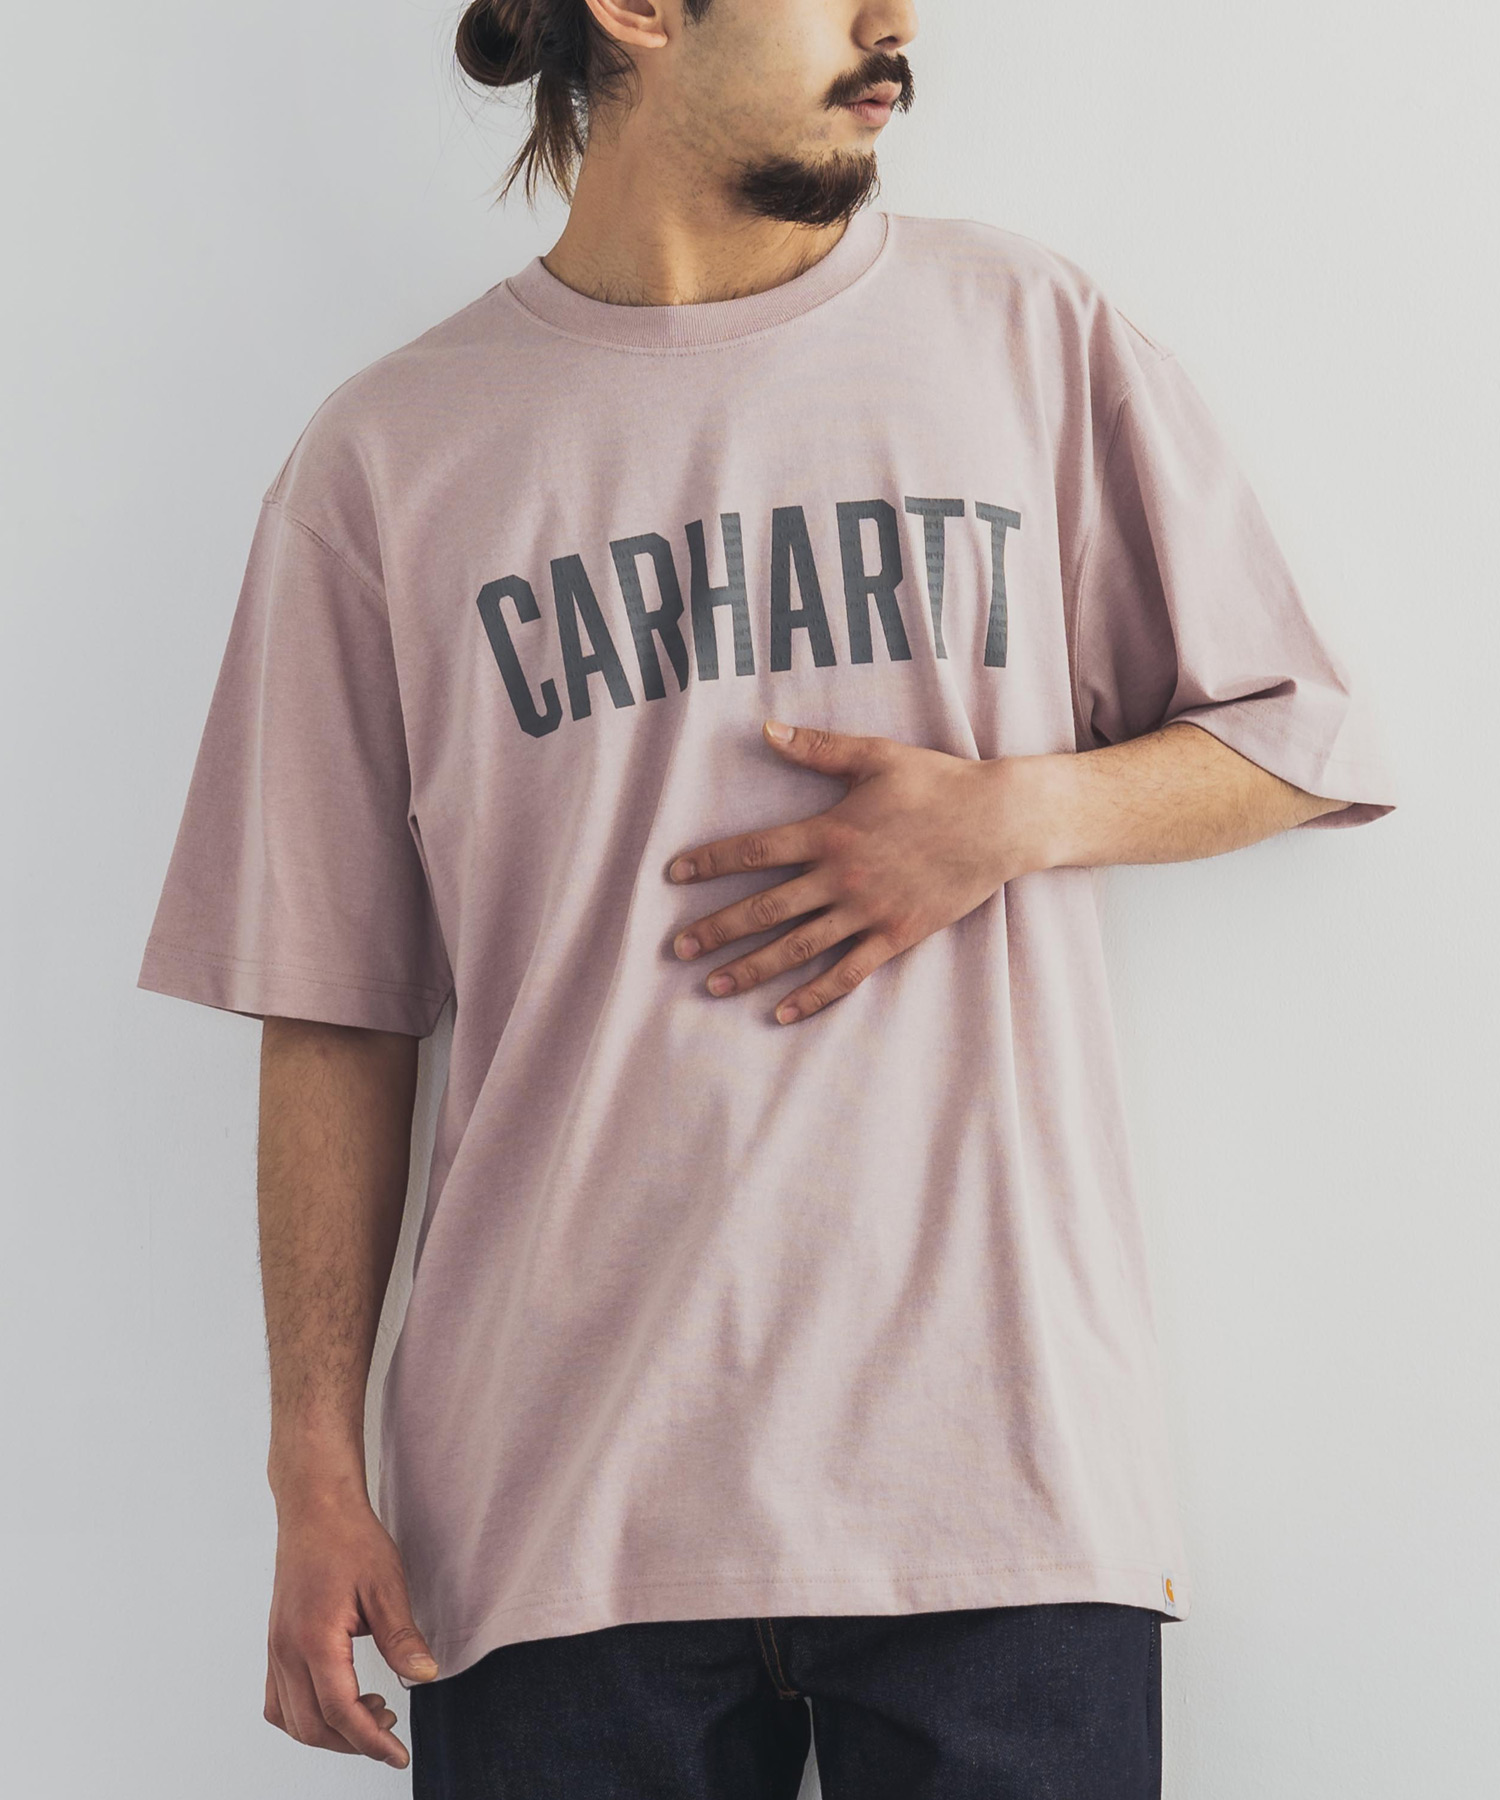 CARHARTT カーハート Tシャツ 半袖 メンズ ストリート カジュアル 